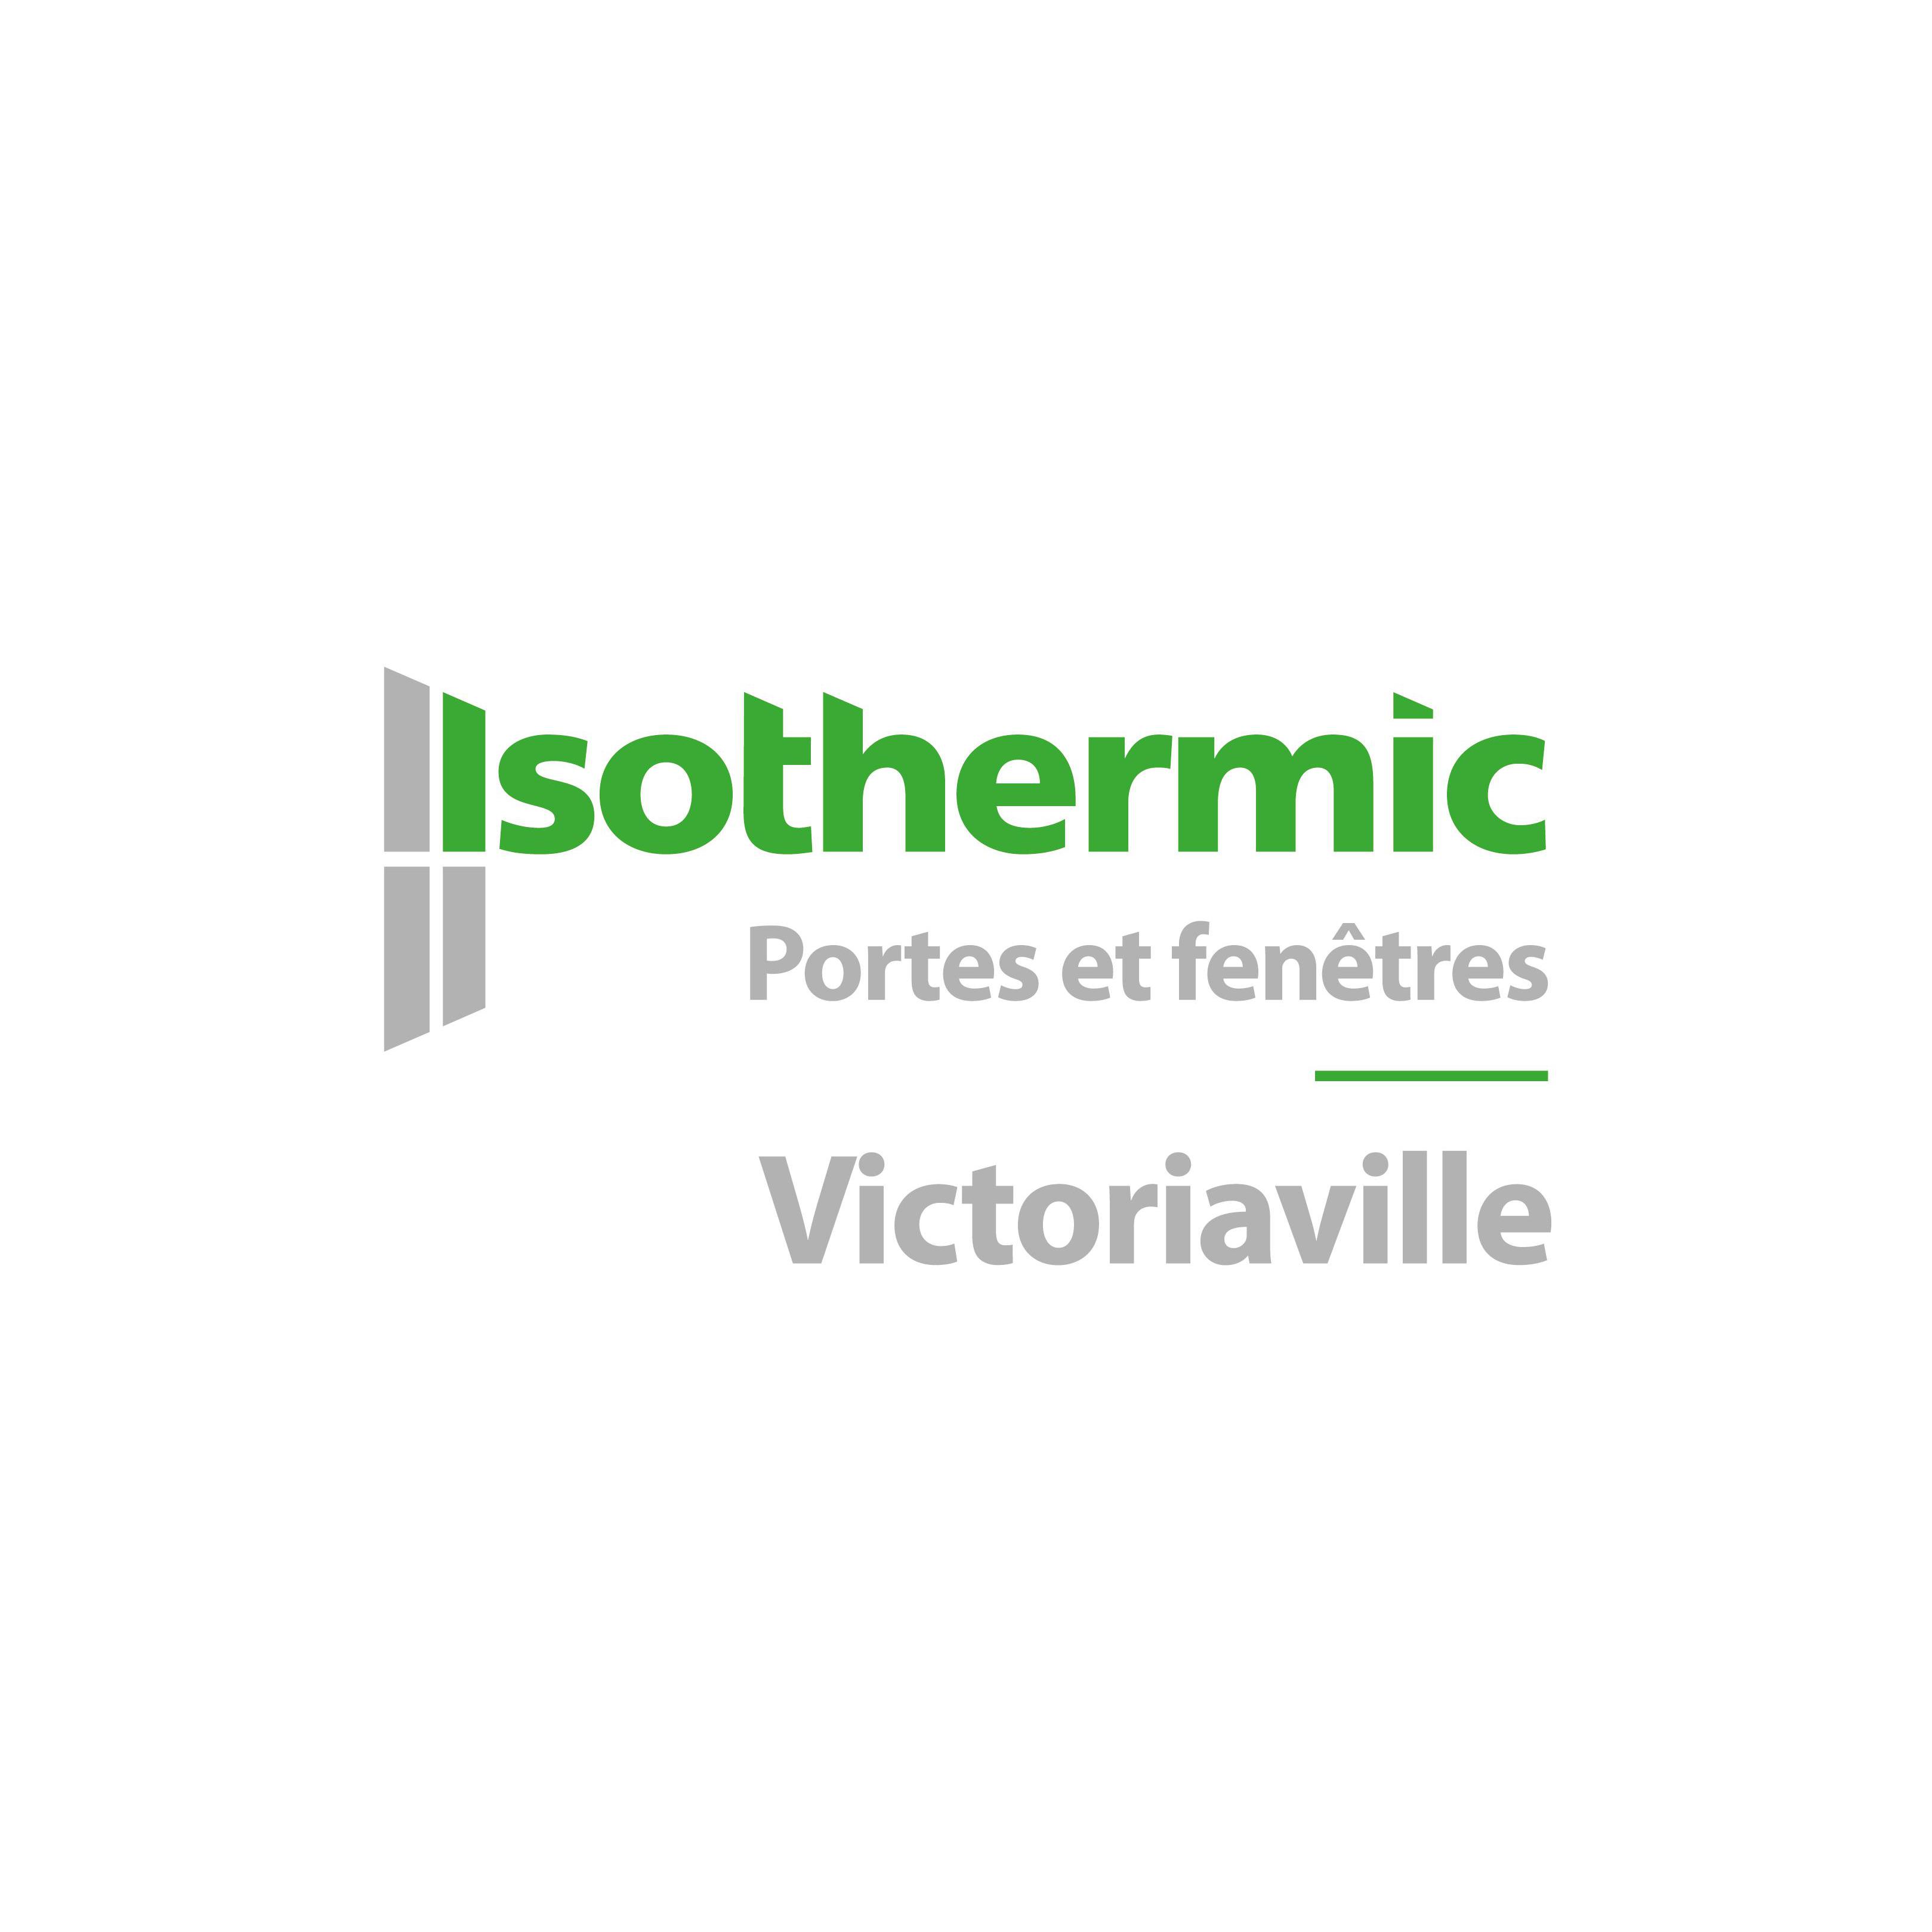 Isothermic portes et fenêtres | Victoriaville